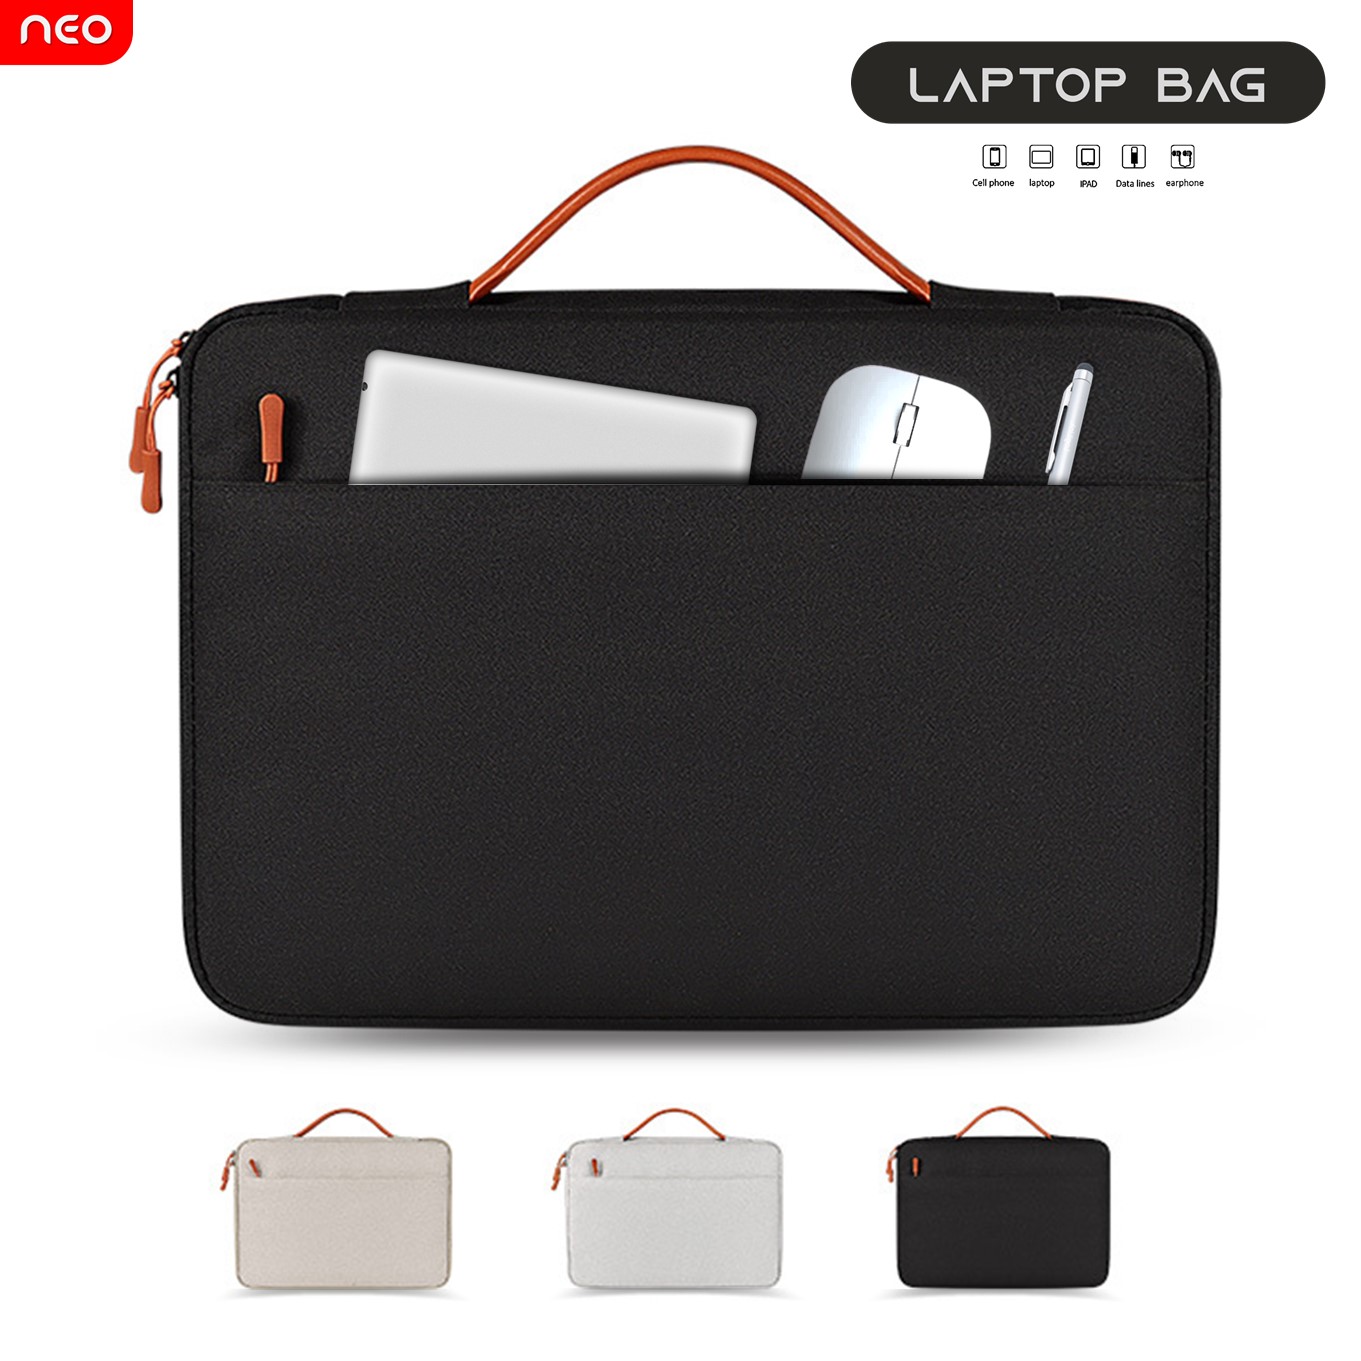 【พร้อมส่ง】เคสโน๊ตบุ๊ค เคสMacbook เคสแล็ปท็อป 12 13.3 14 15 นิ้ว กระเป๋าใส่โน๊ตบุ๊ค กระเป๋าSurface กันน้ำ กันฝุ่น กันกระแทก Macbook Case Laptop Bag Surface 12-15inch